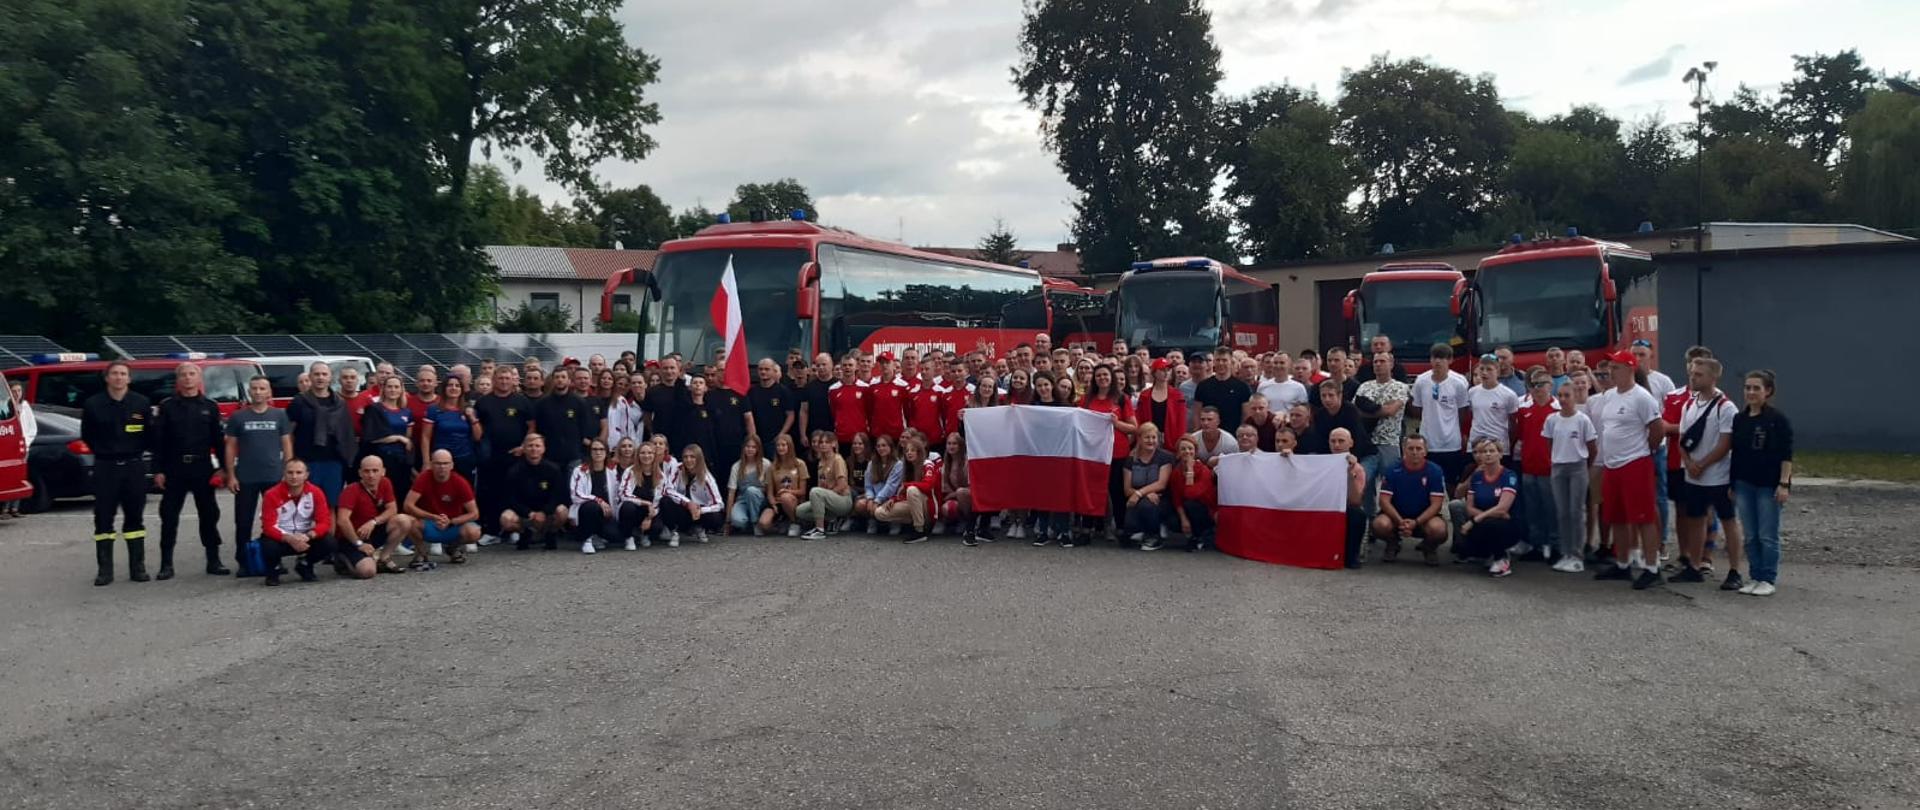 Grupowe zdjęcie polskich reprezentantów wybierających się na zawody CTIF 2022. W tle widoczne autokary oraz busy